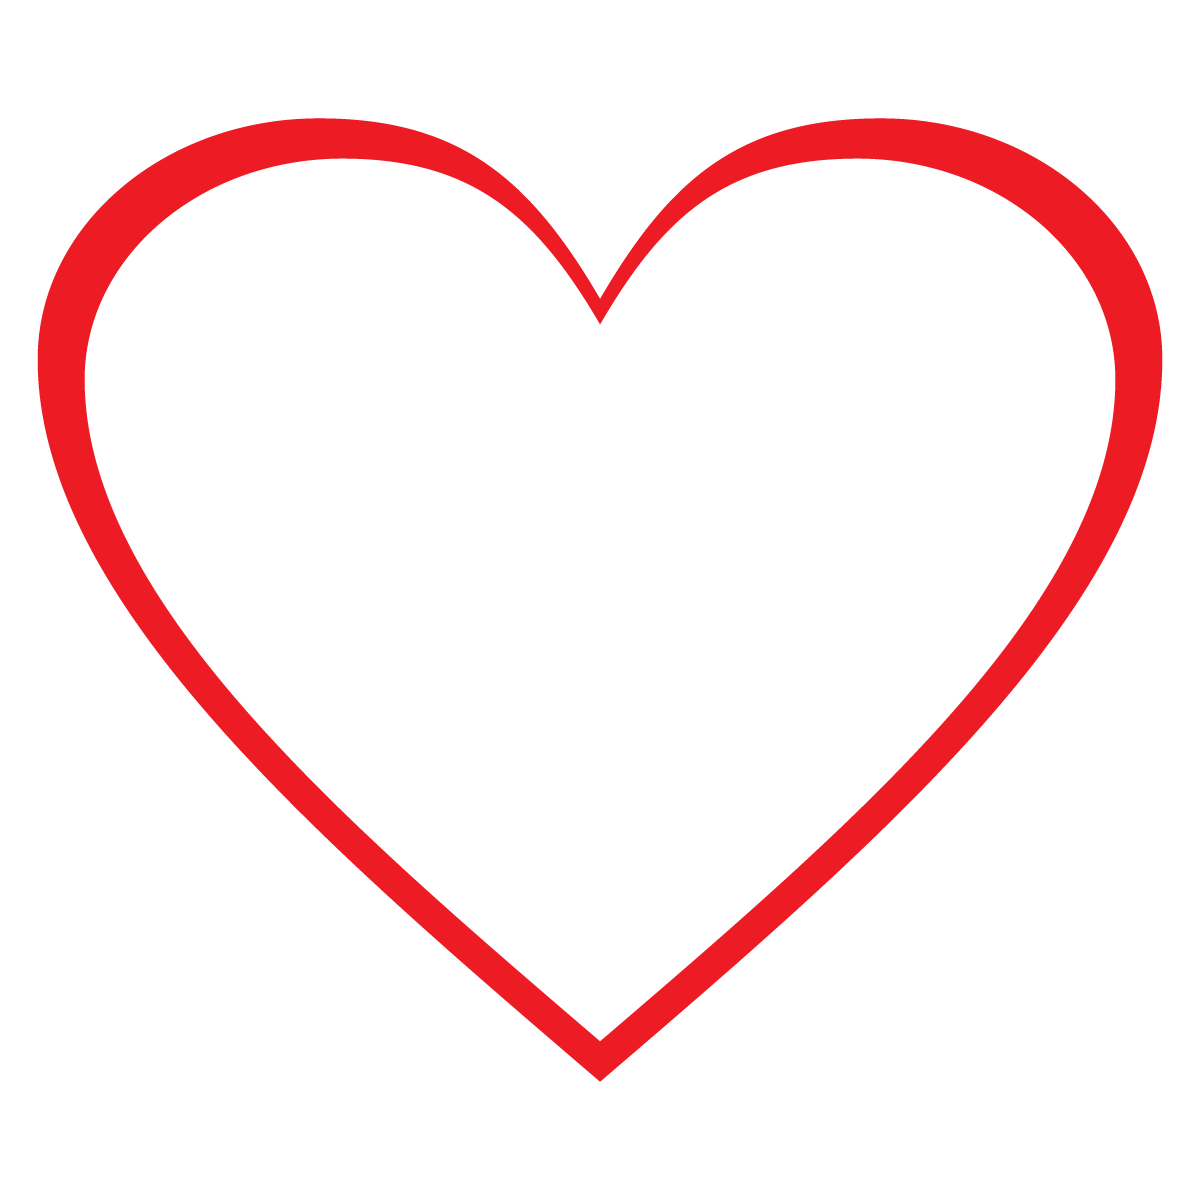 free linked hearts clip art - photo #41